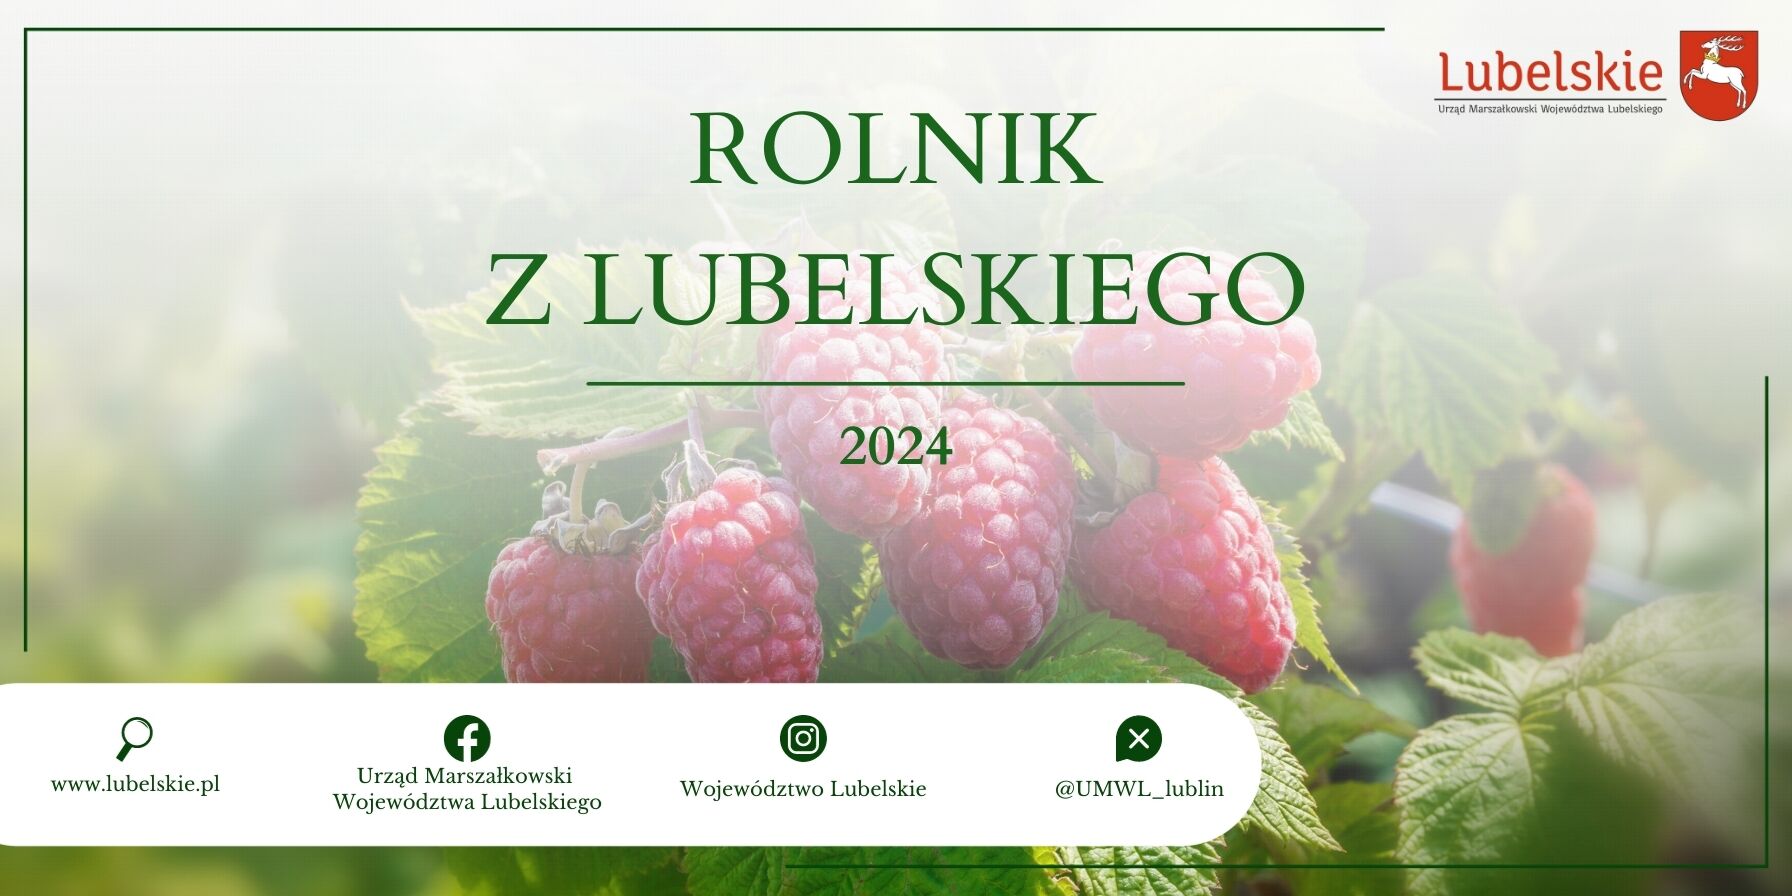 Zdjęcie przedstawia reklamową grafikę z napisem "ROLNIK Z LUBELSKIEGO 2024" umieszczoną nad zdjęciem dojrzałych czerwonych malin. Na dole znajdują się loga i adresy internetowe związane z regionem Lubelskim w Polsce.